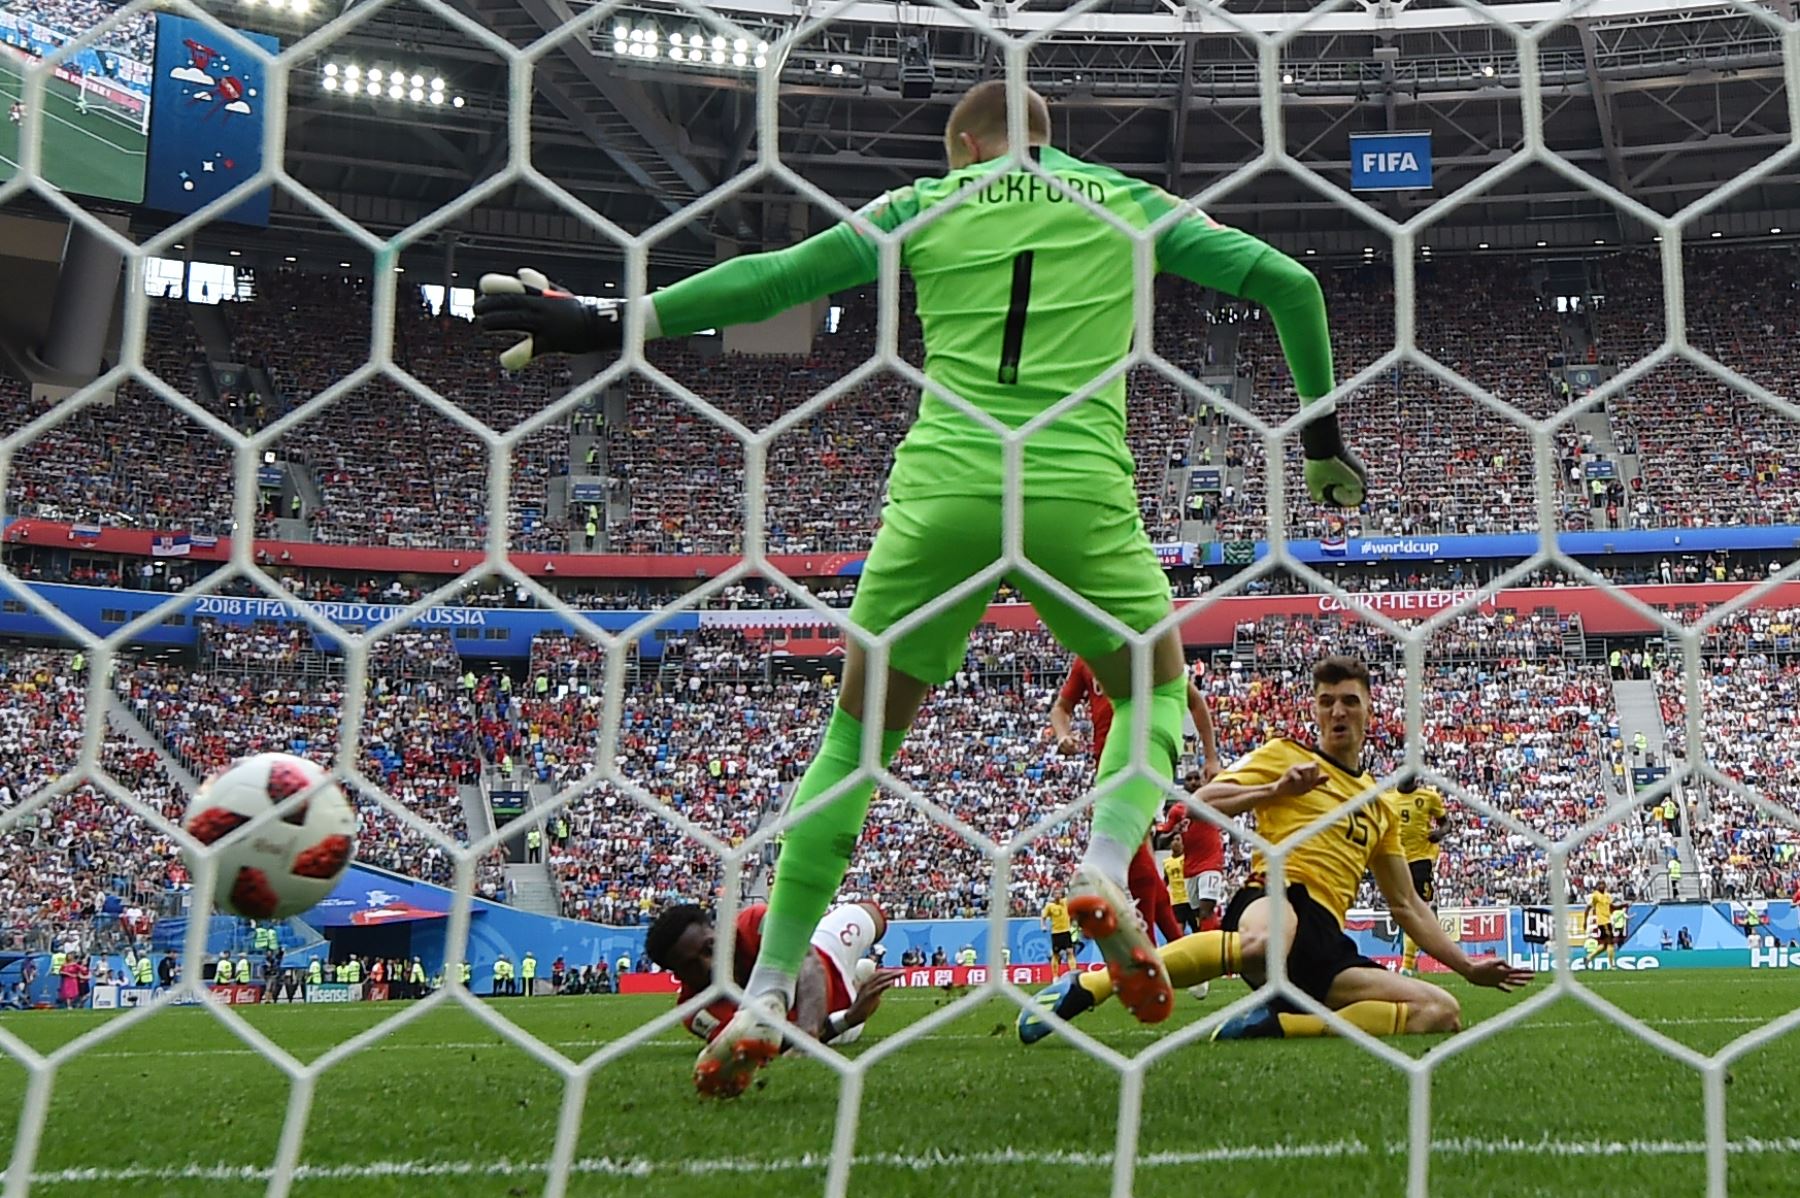 El defensor belga Thomas Meunier (R) anota al portero inglés Jordan Pickford durante su partido por la Copa Mundial 2018 en Rusia por el partido de fútbol entre Belgica e Inglaterra en el Estadio de San Petersburgo el 14 de julio de 2018. / AFP